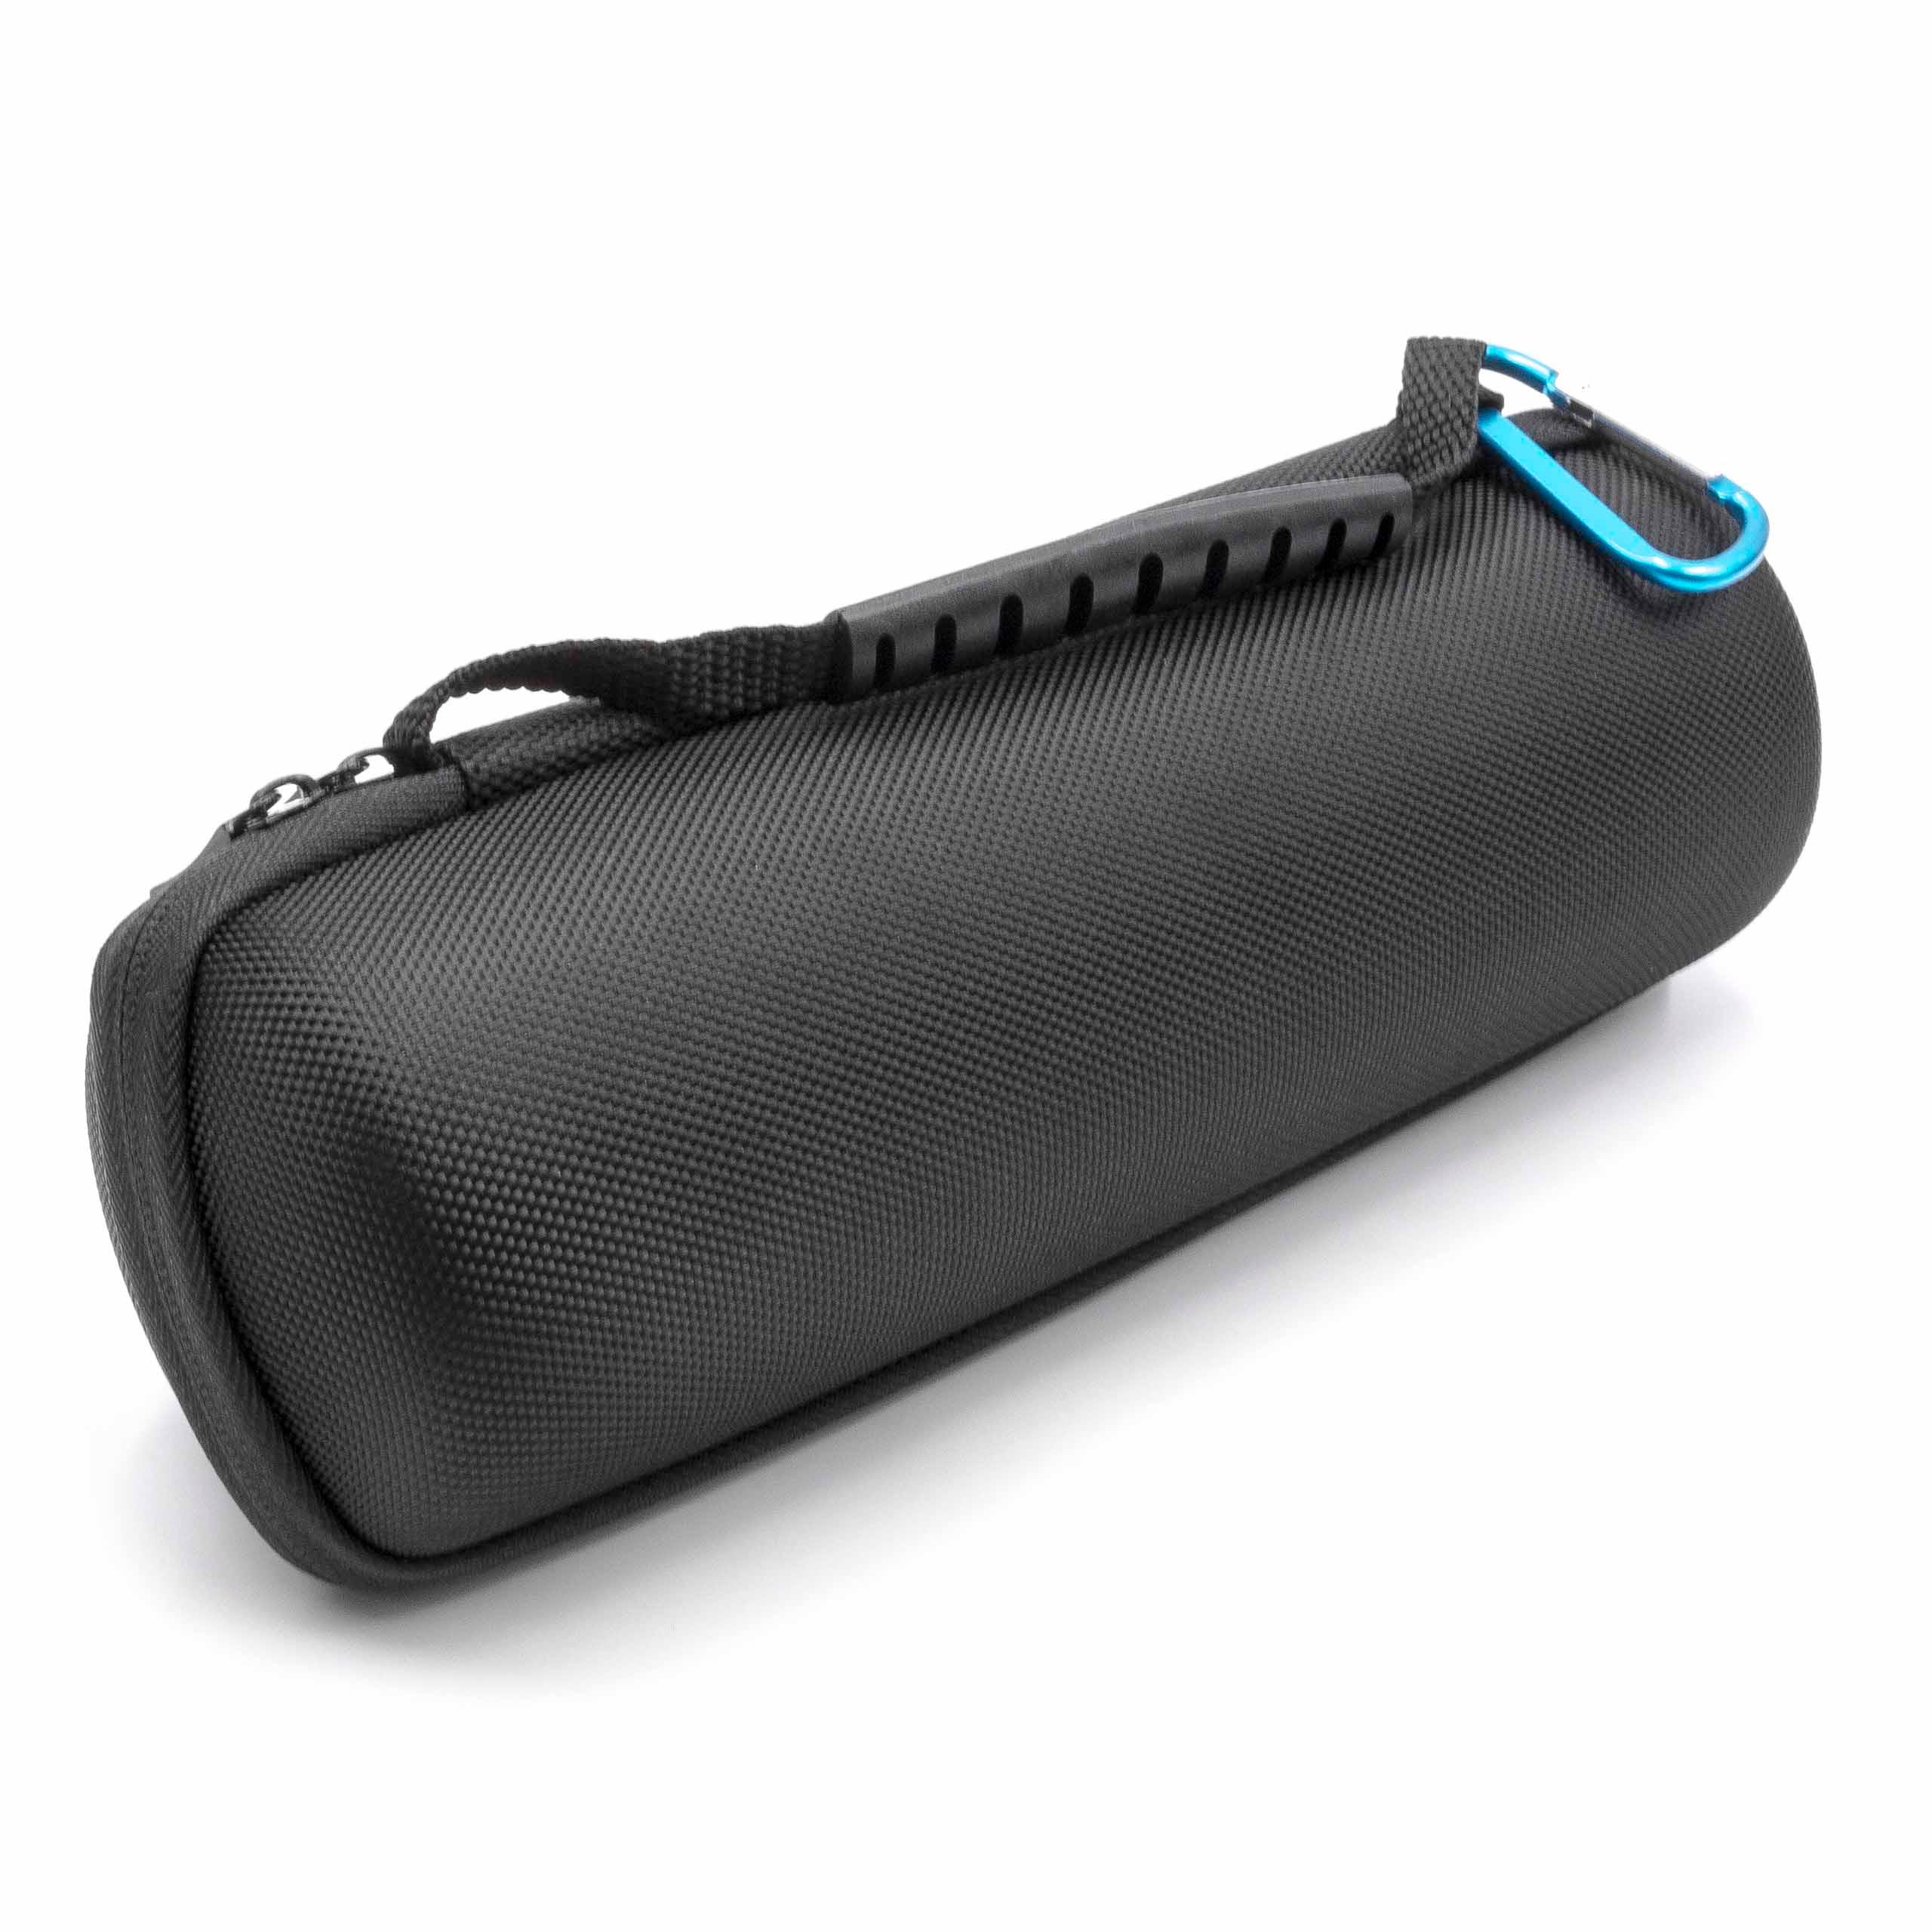 Muti-funktional Hollow Schutzhülle Tasche Case Storage Bag Pouch für JBL Flip 4 